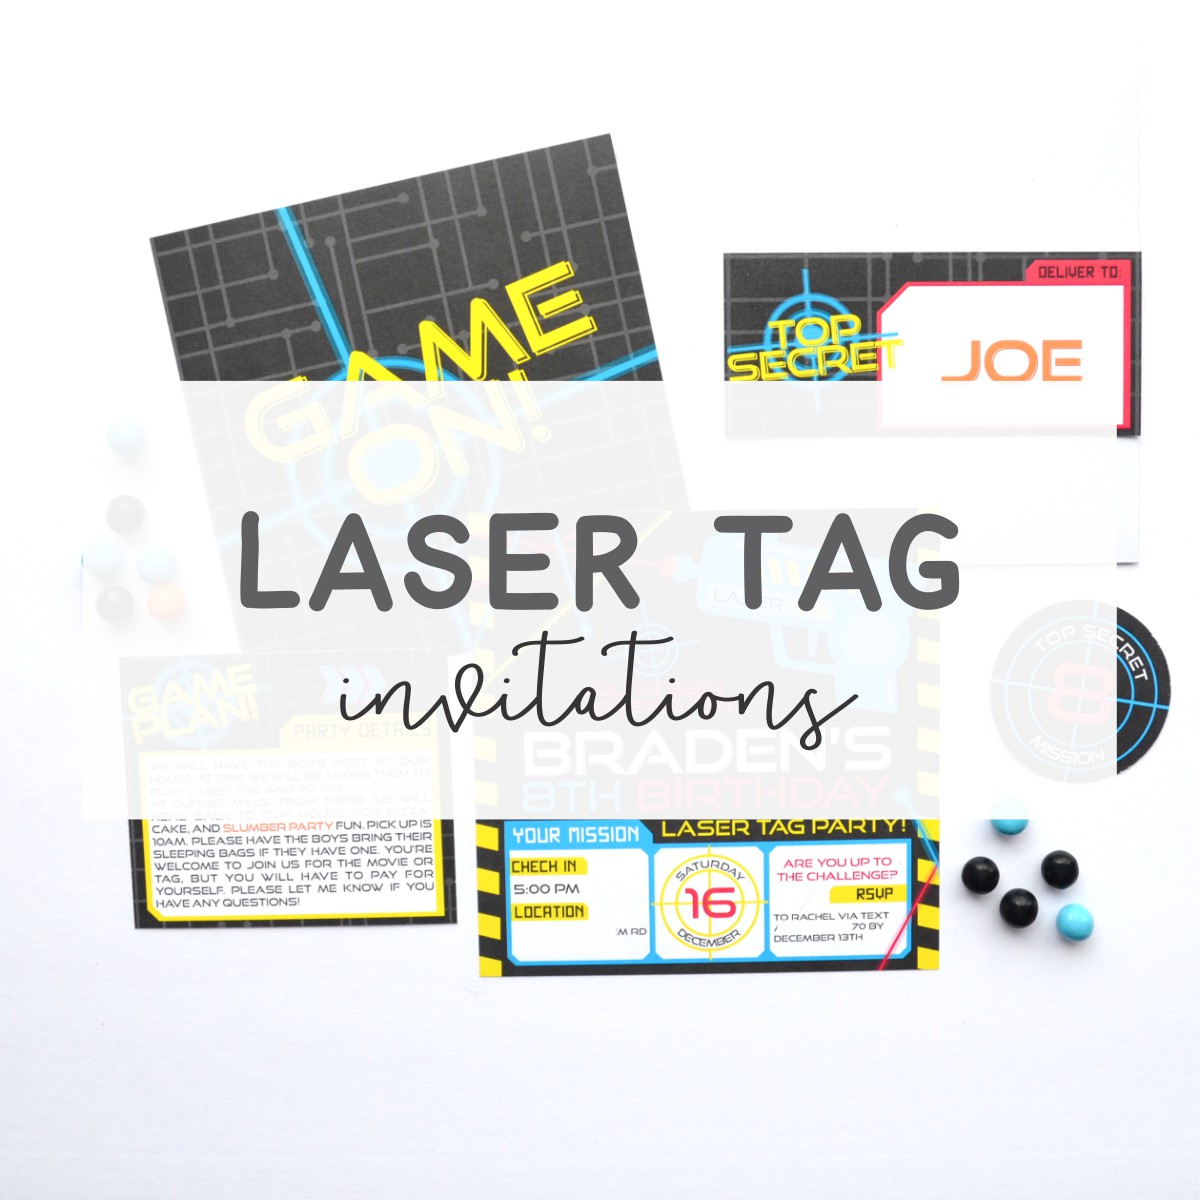 Laser Tag Invitations